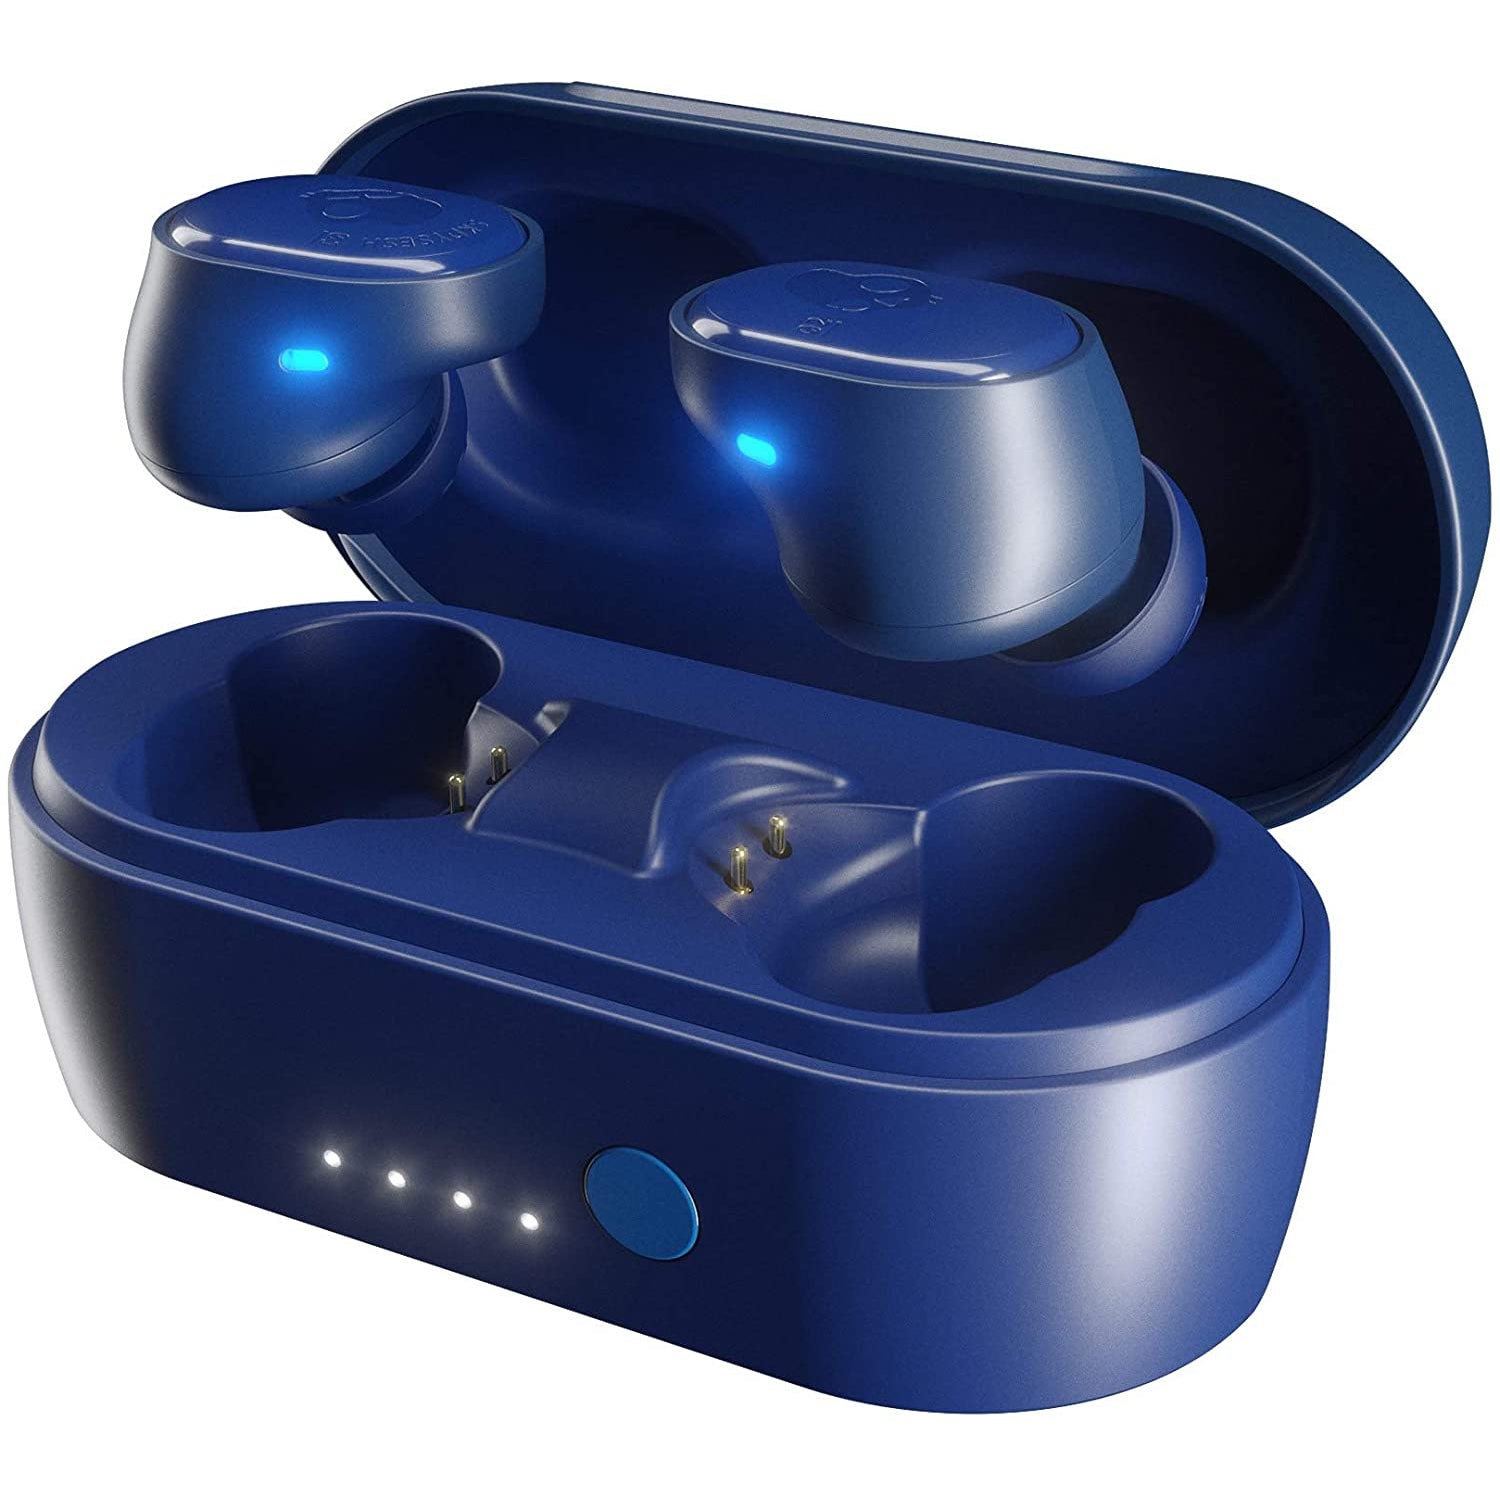 Skullcandy Sesh True Wireless In-Ear Earbuds - Indigo Blue